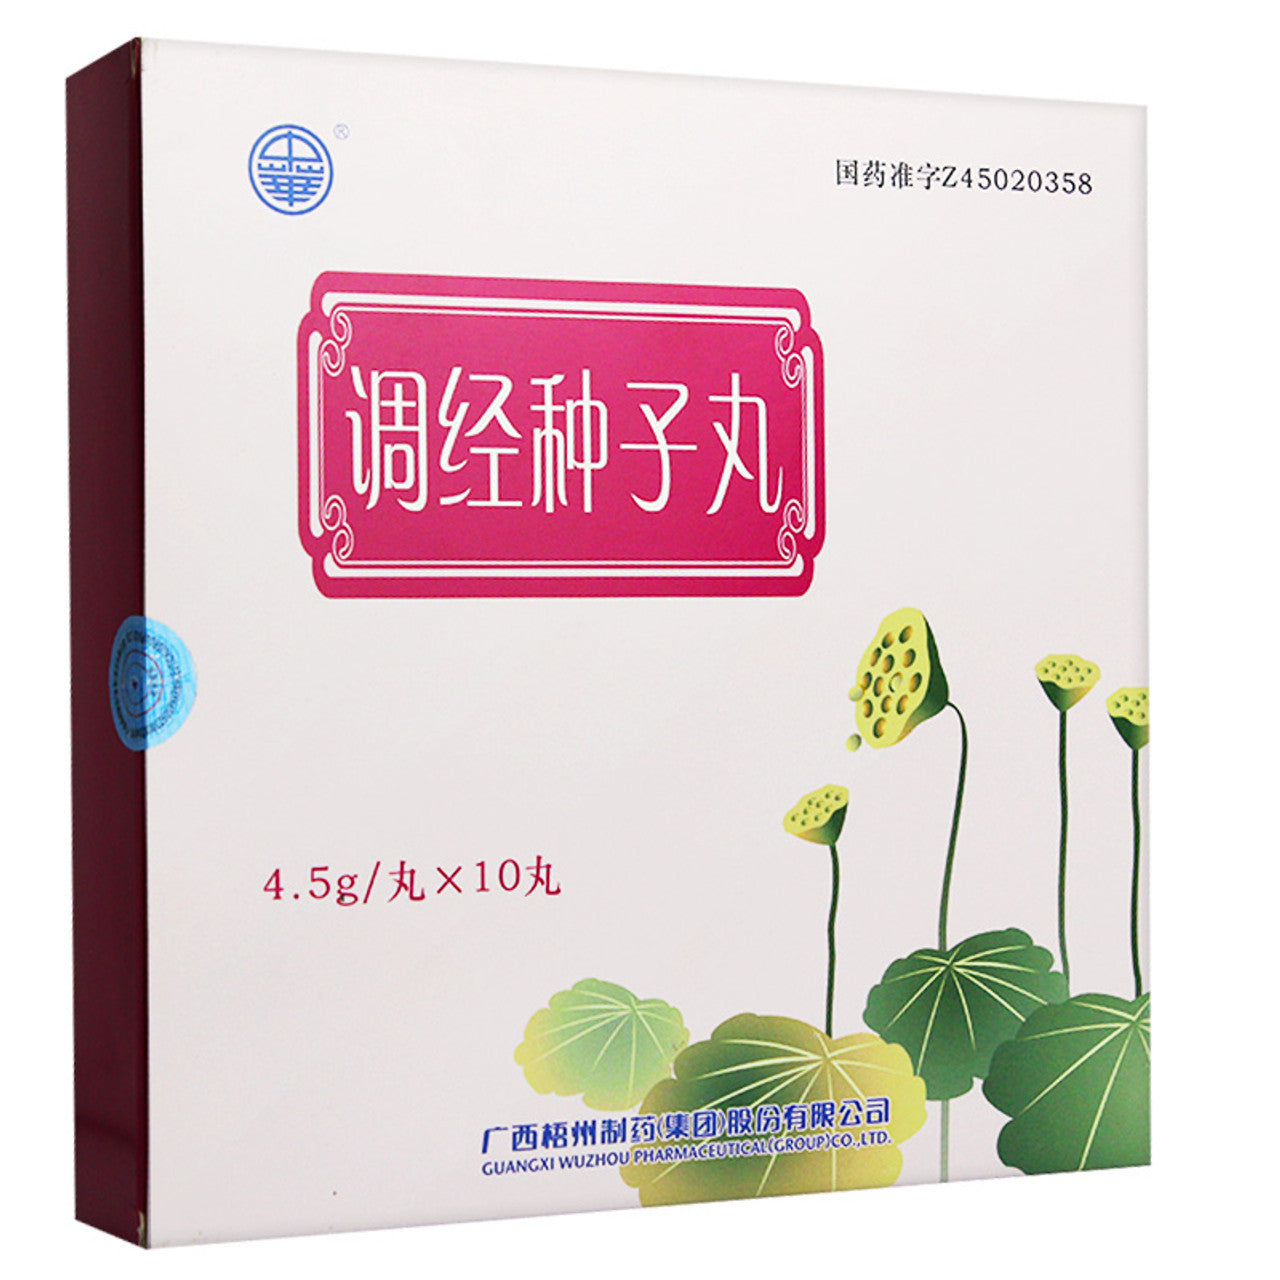 China Herb. Zhonghua brand. Tiaojing Zhongzi Wan or Tiao Jing Zhong Zi Wan or Tiaojing Zhongzi Pills for irregular menstruation, abdominal pain during menstruation, menorrhagia, long-term infertility.